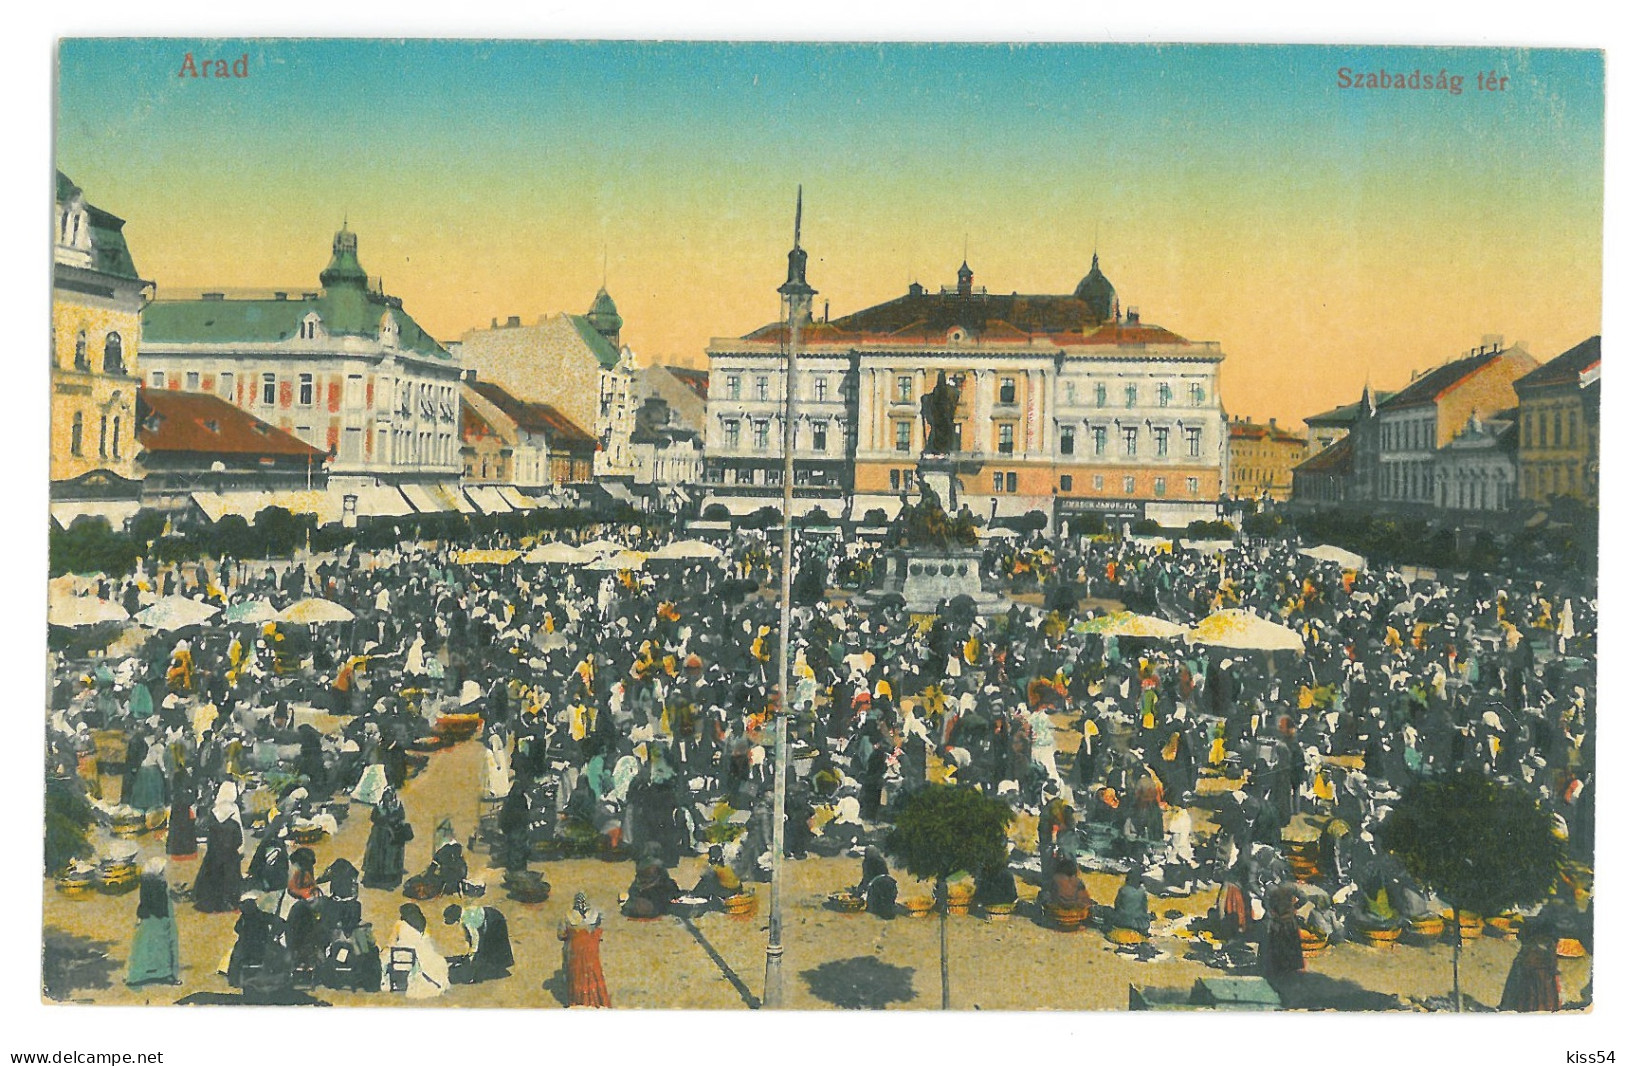 RO 09 - 16182 ARAD, Market, Romania - Old Postcard - Unused - Roumanie